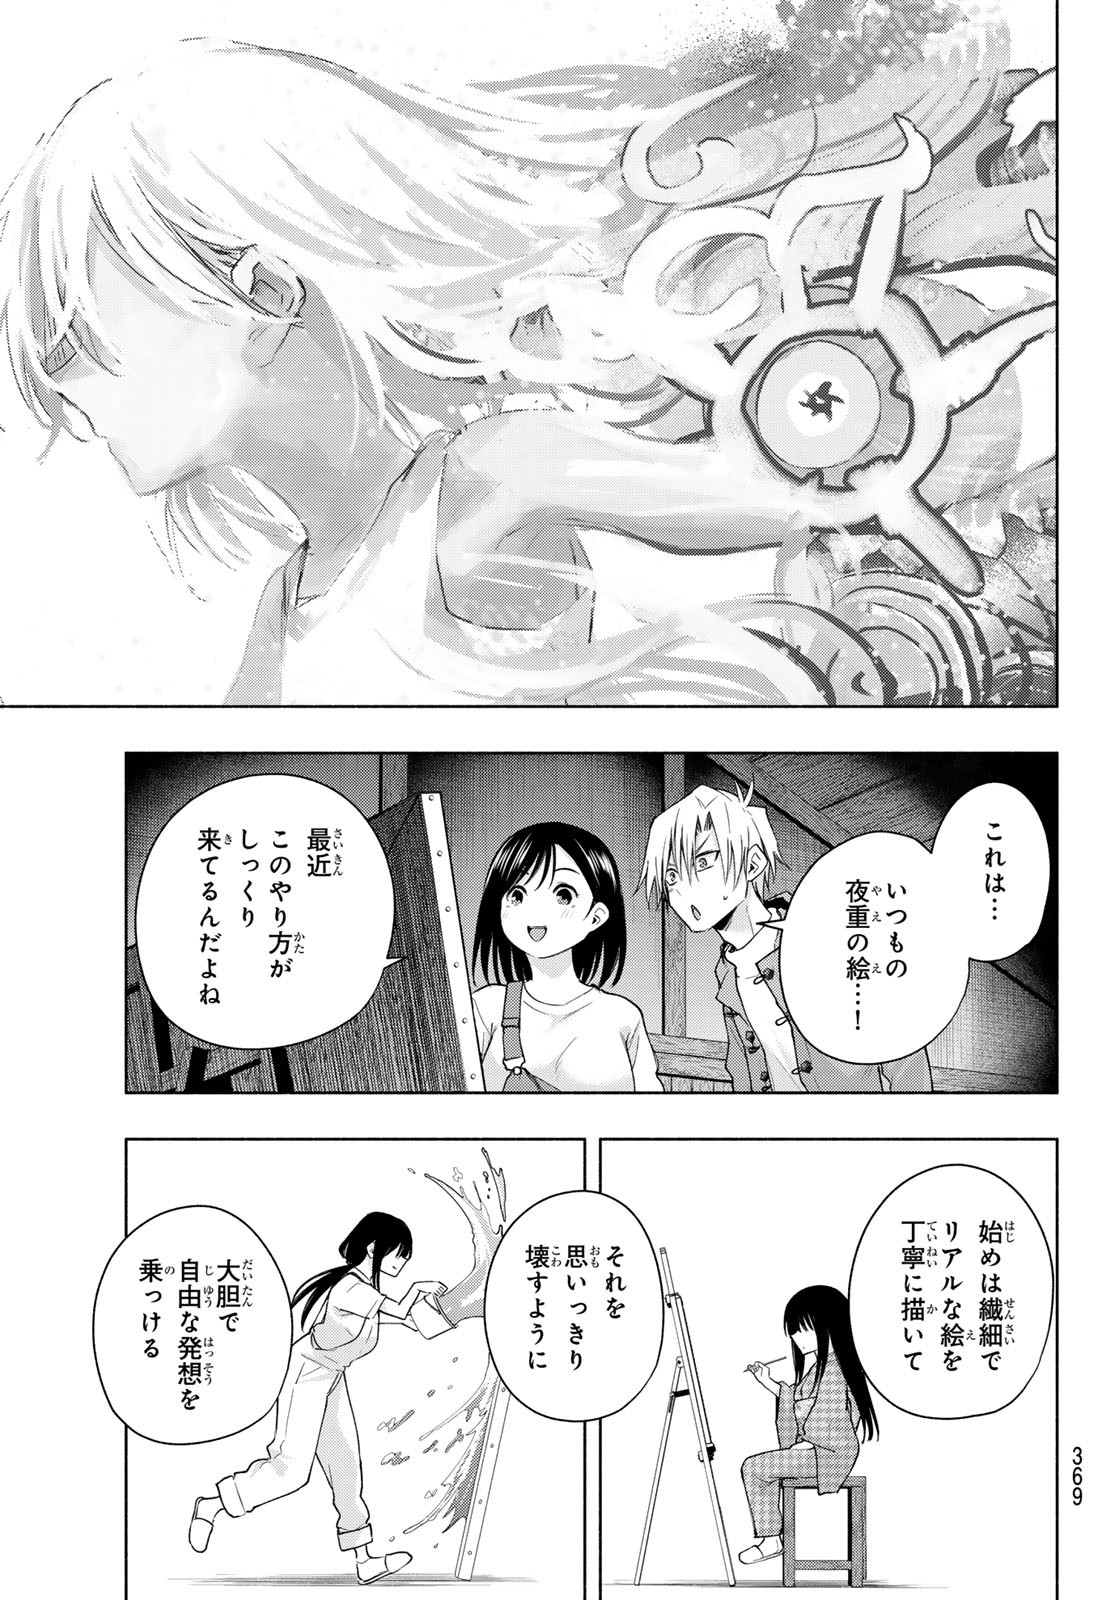 Amagami-san Chi no Enmusubi - Chapter 139 - Page 11